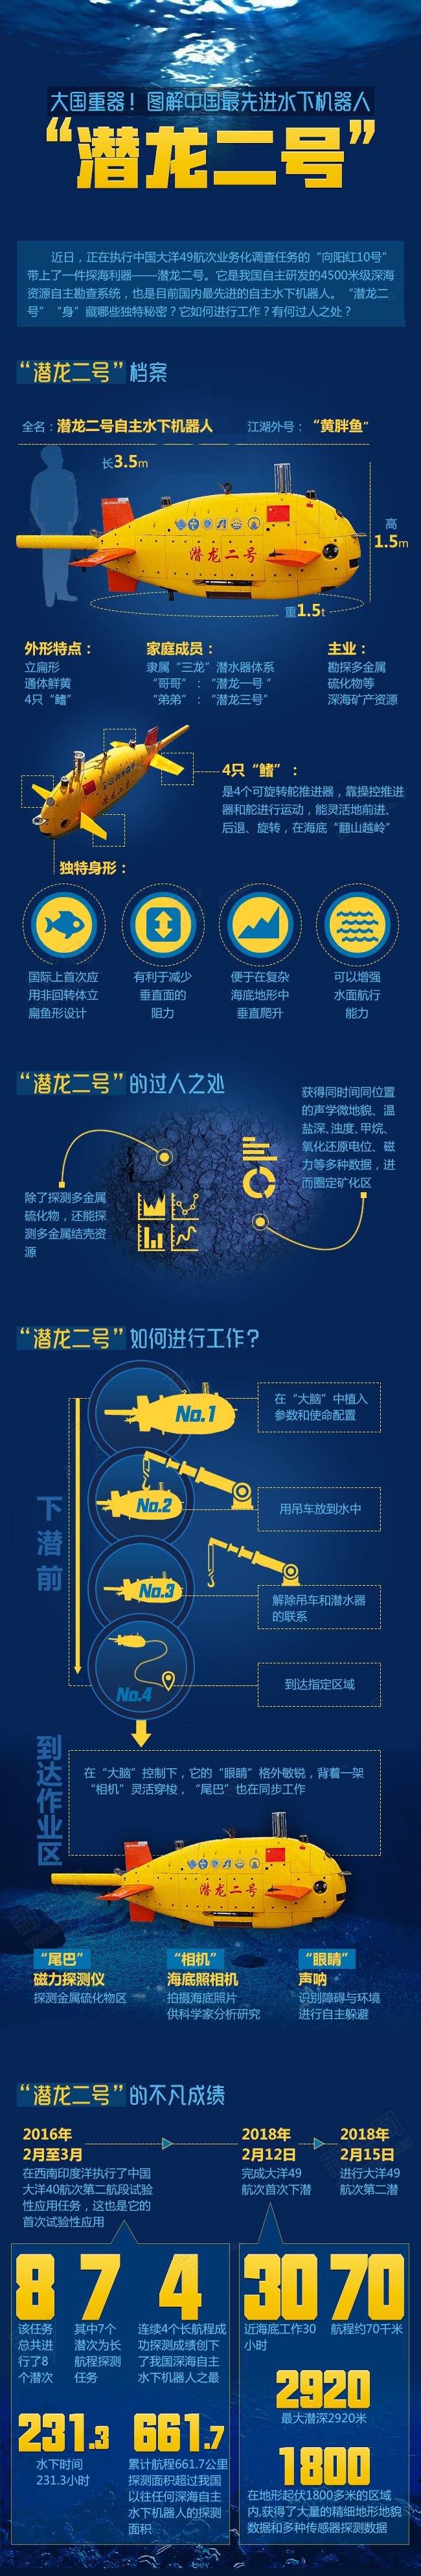 大国重器!图解中国最先进水下机器人潜龙二号